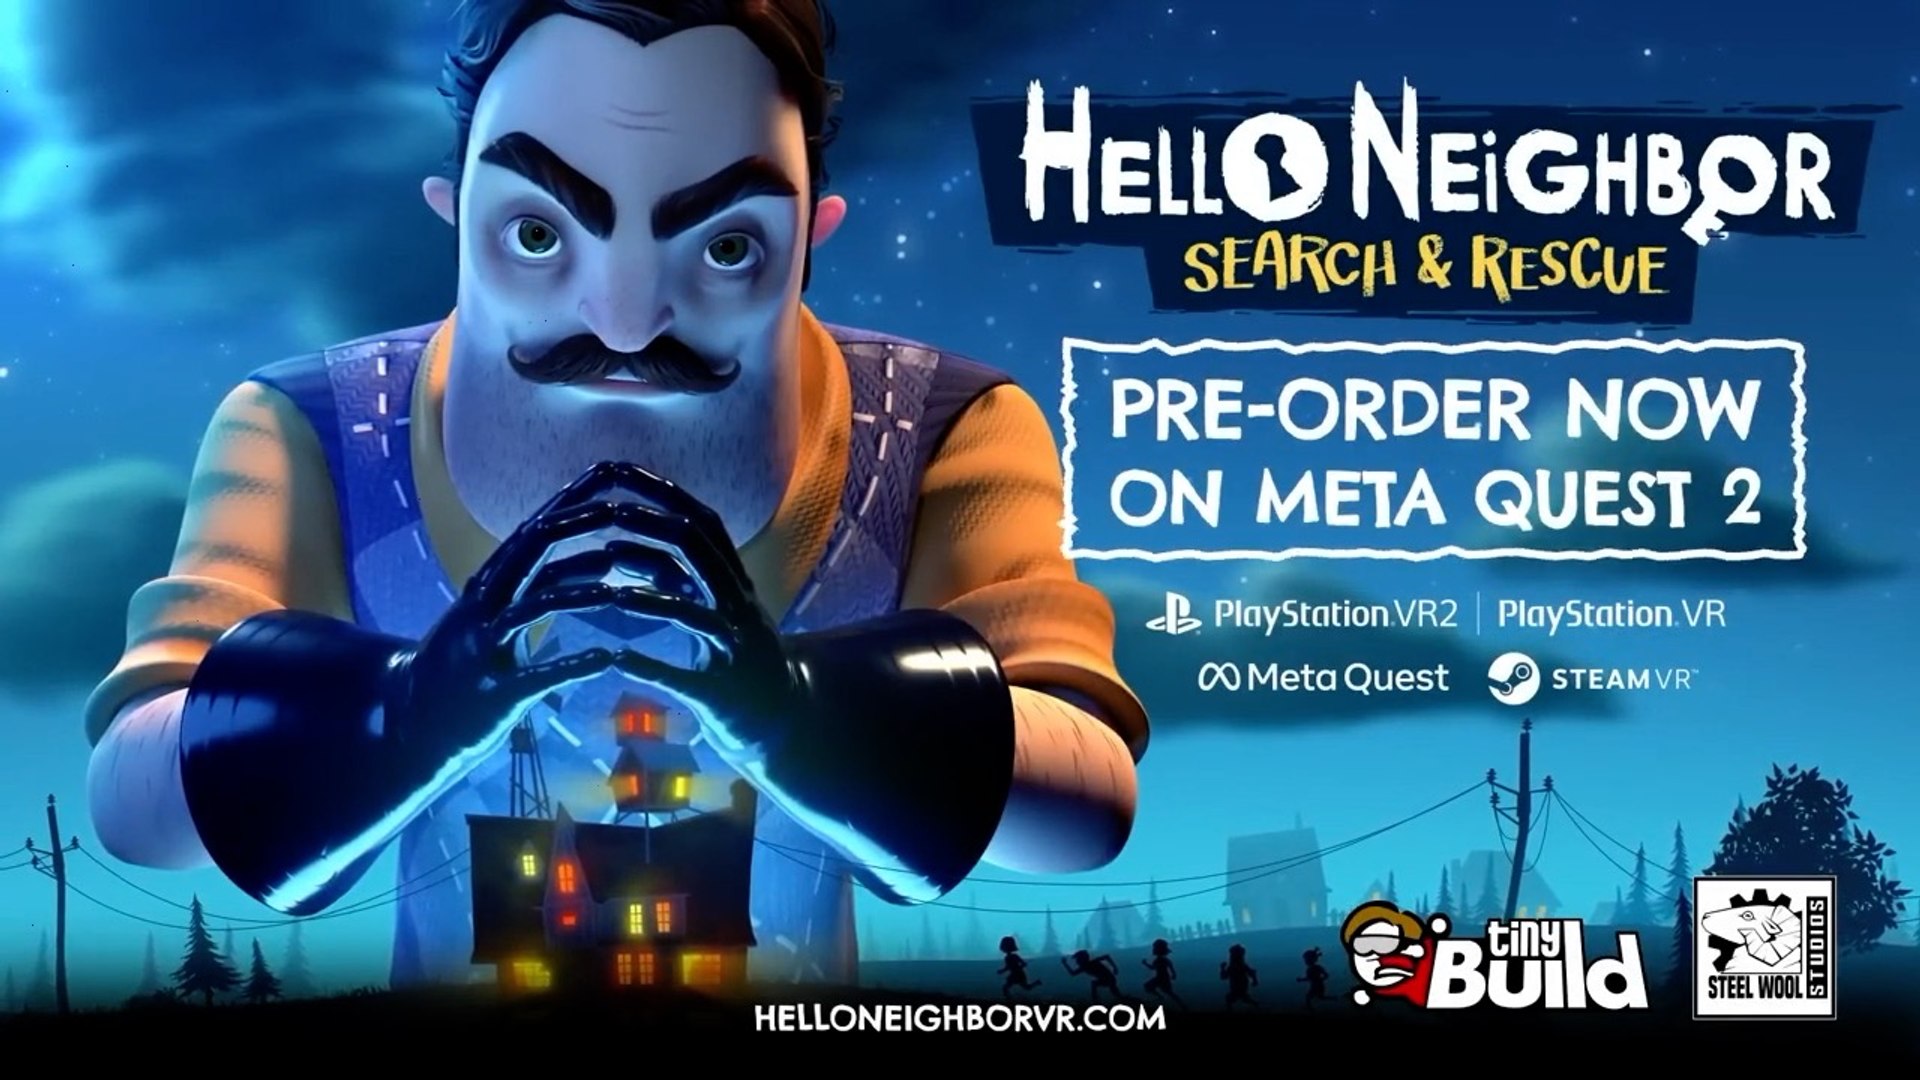 Hello Neighbor 2 e Dragon Quest são destaques nos lançamentos da semana